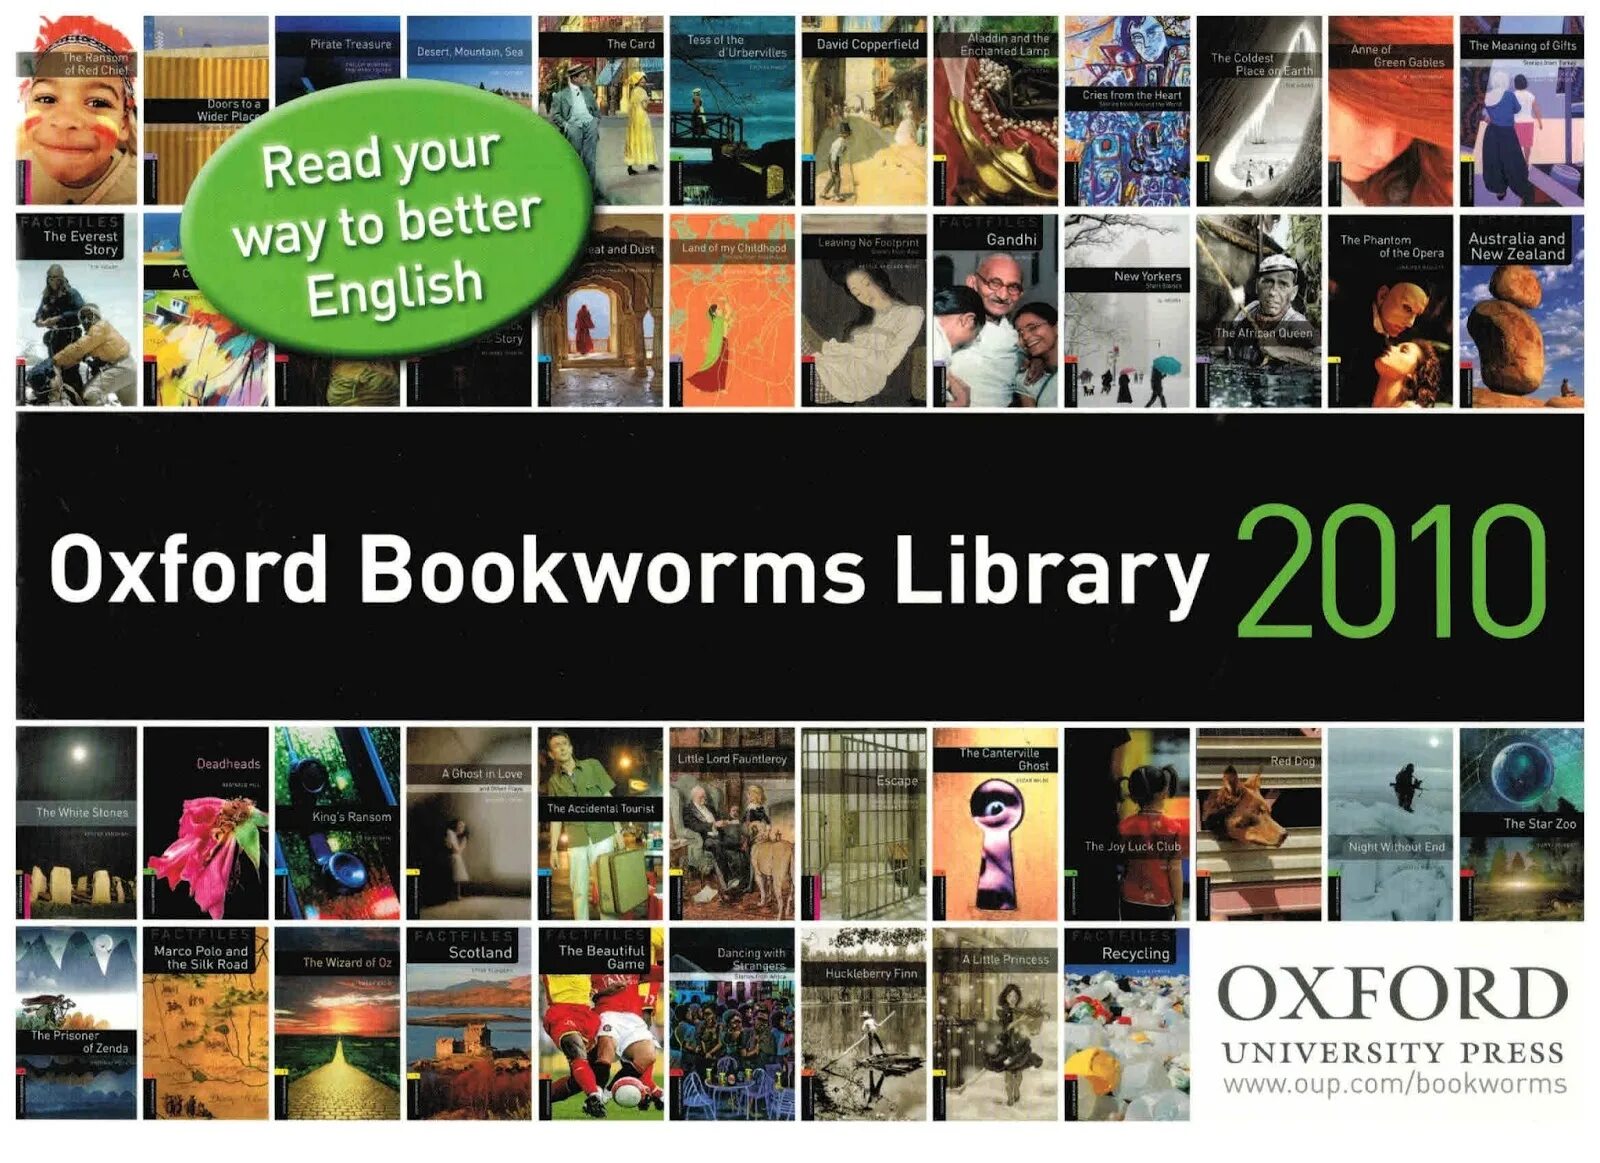 Oxford bookworms. Адаптированные книги Oxford. Oxford bookworms Library. Oxford bookworms уровни. Bookworm library